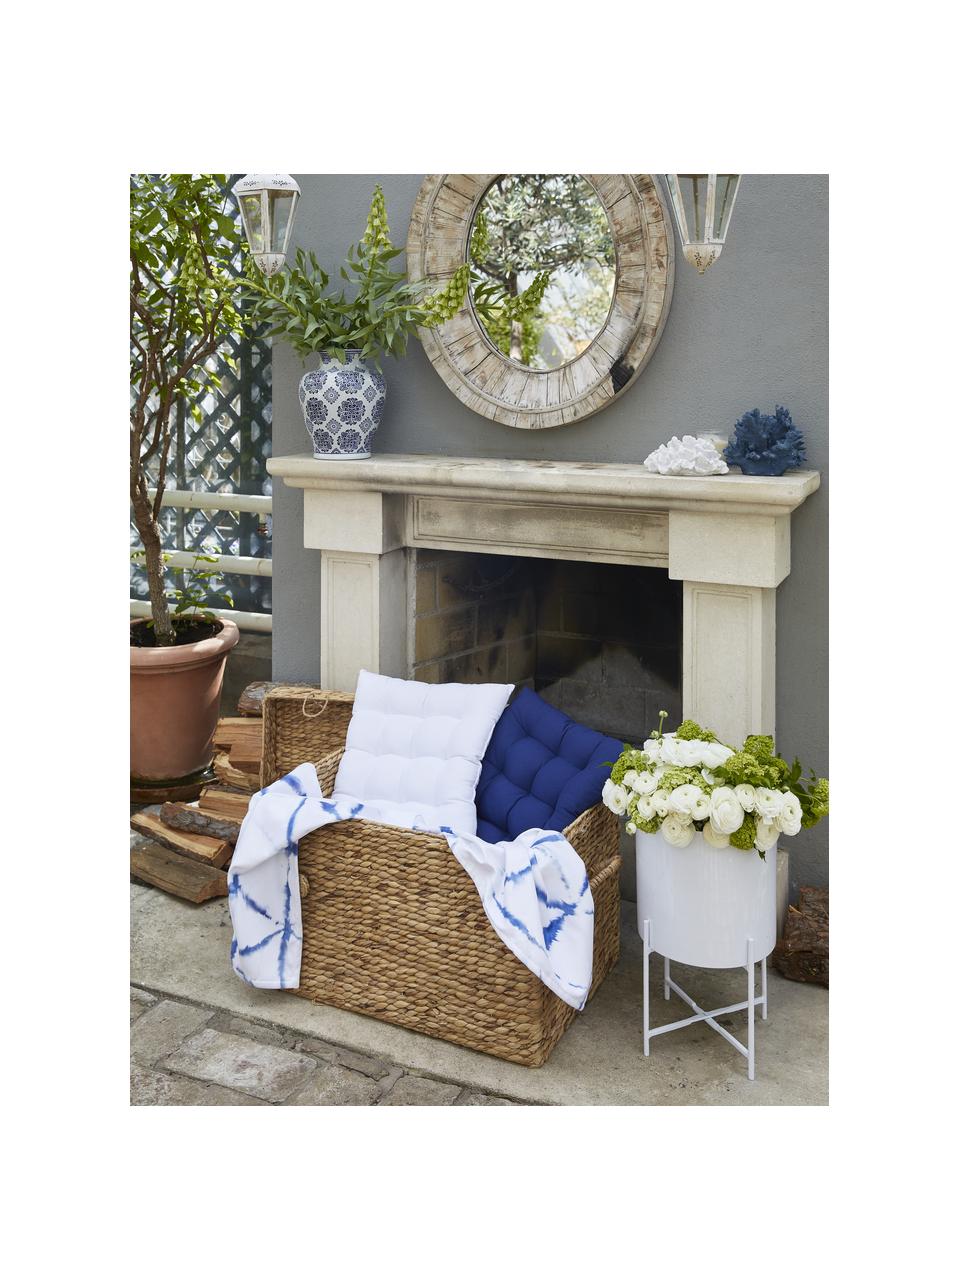 Poduszka na krzesło z bawełny Ava, Biały, S 40 x D 40 cm